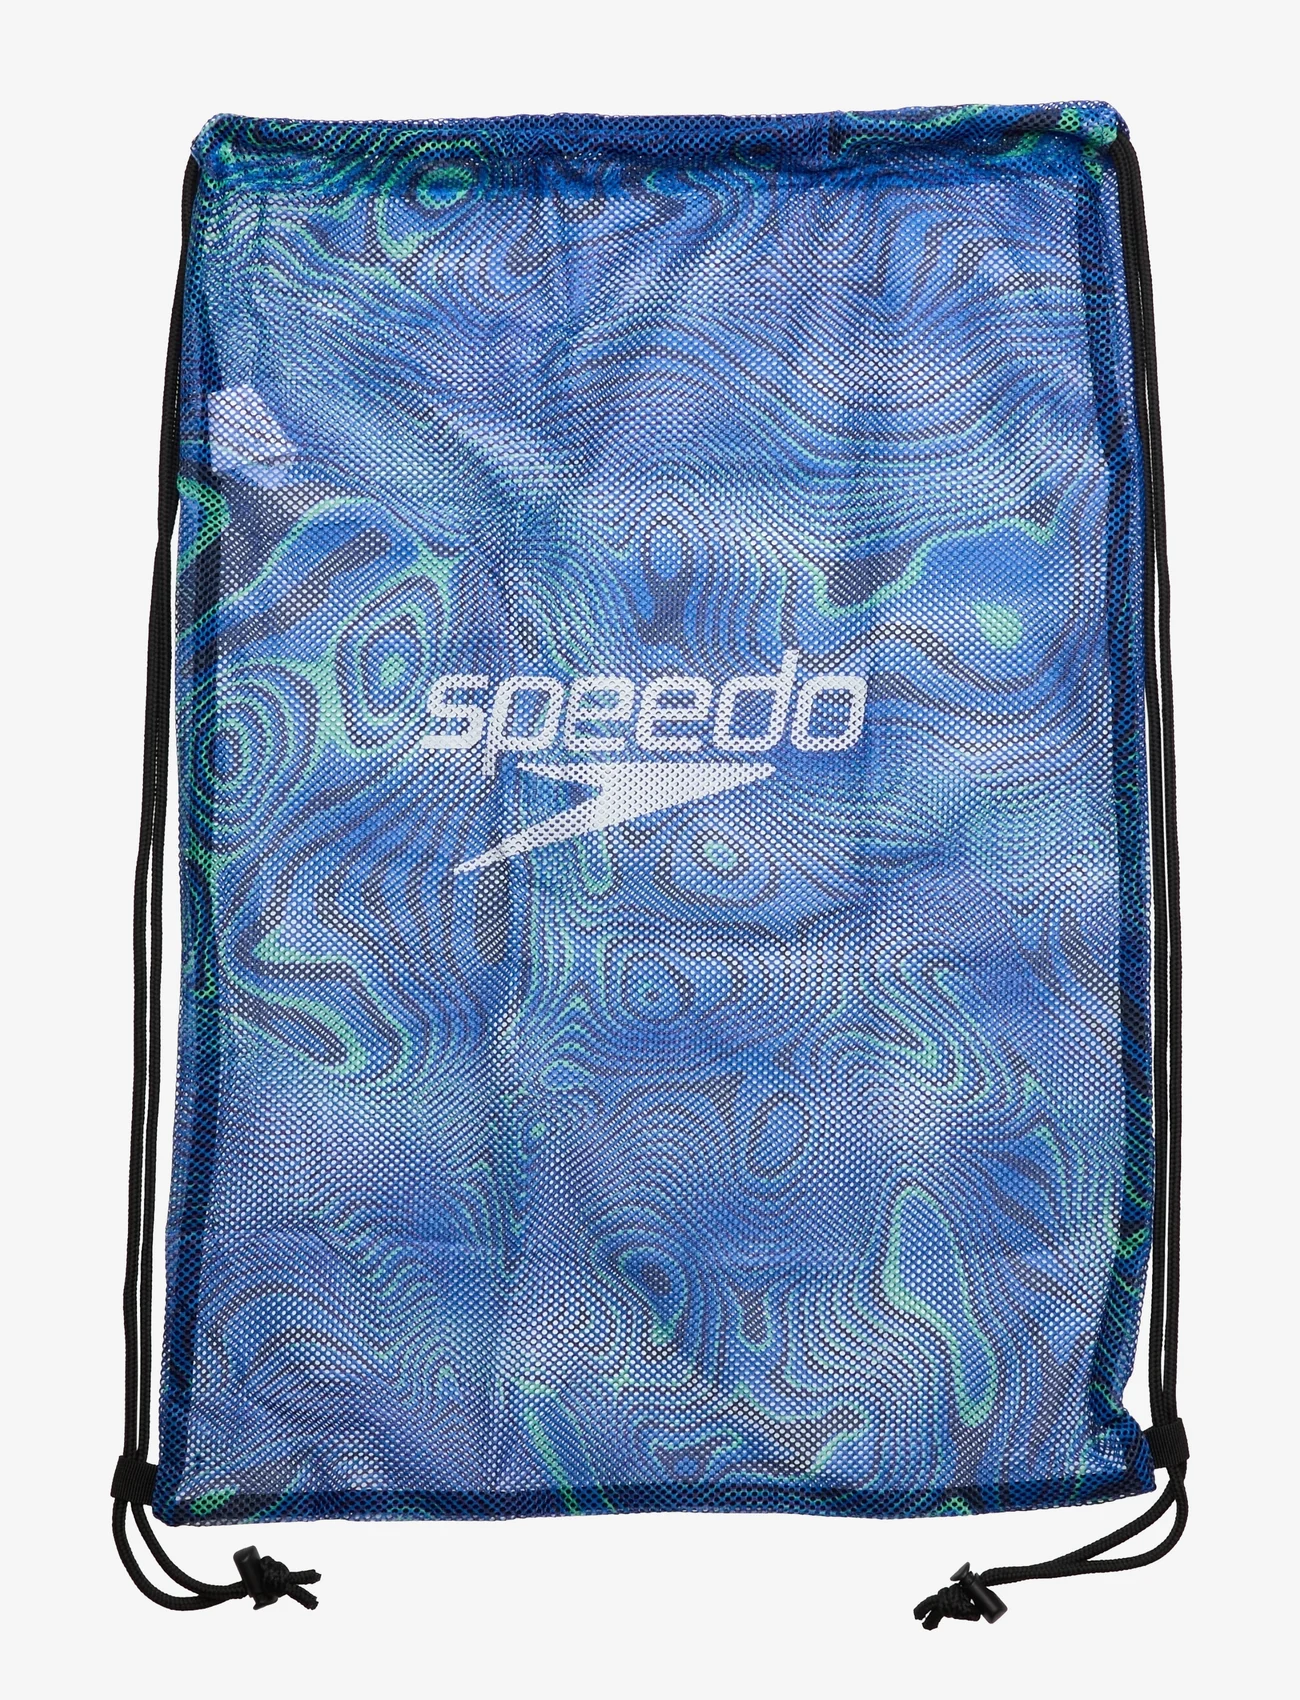 Speedo - Printed Mesh Bags - blue/grey - 1